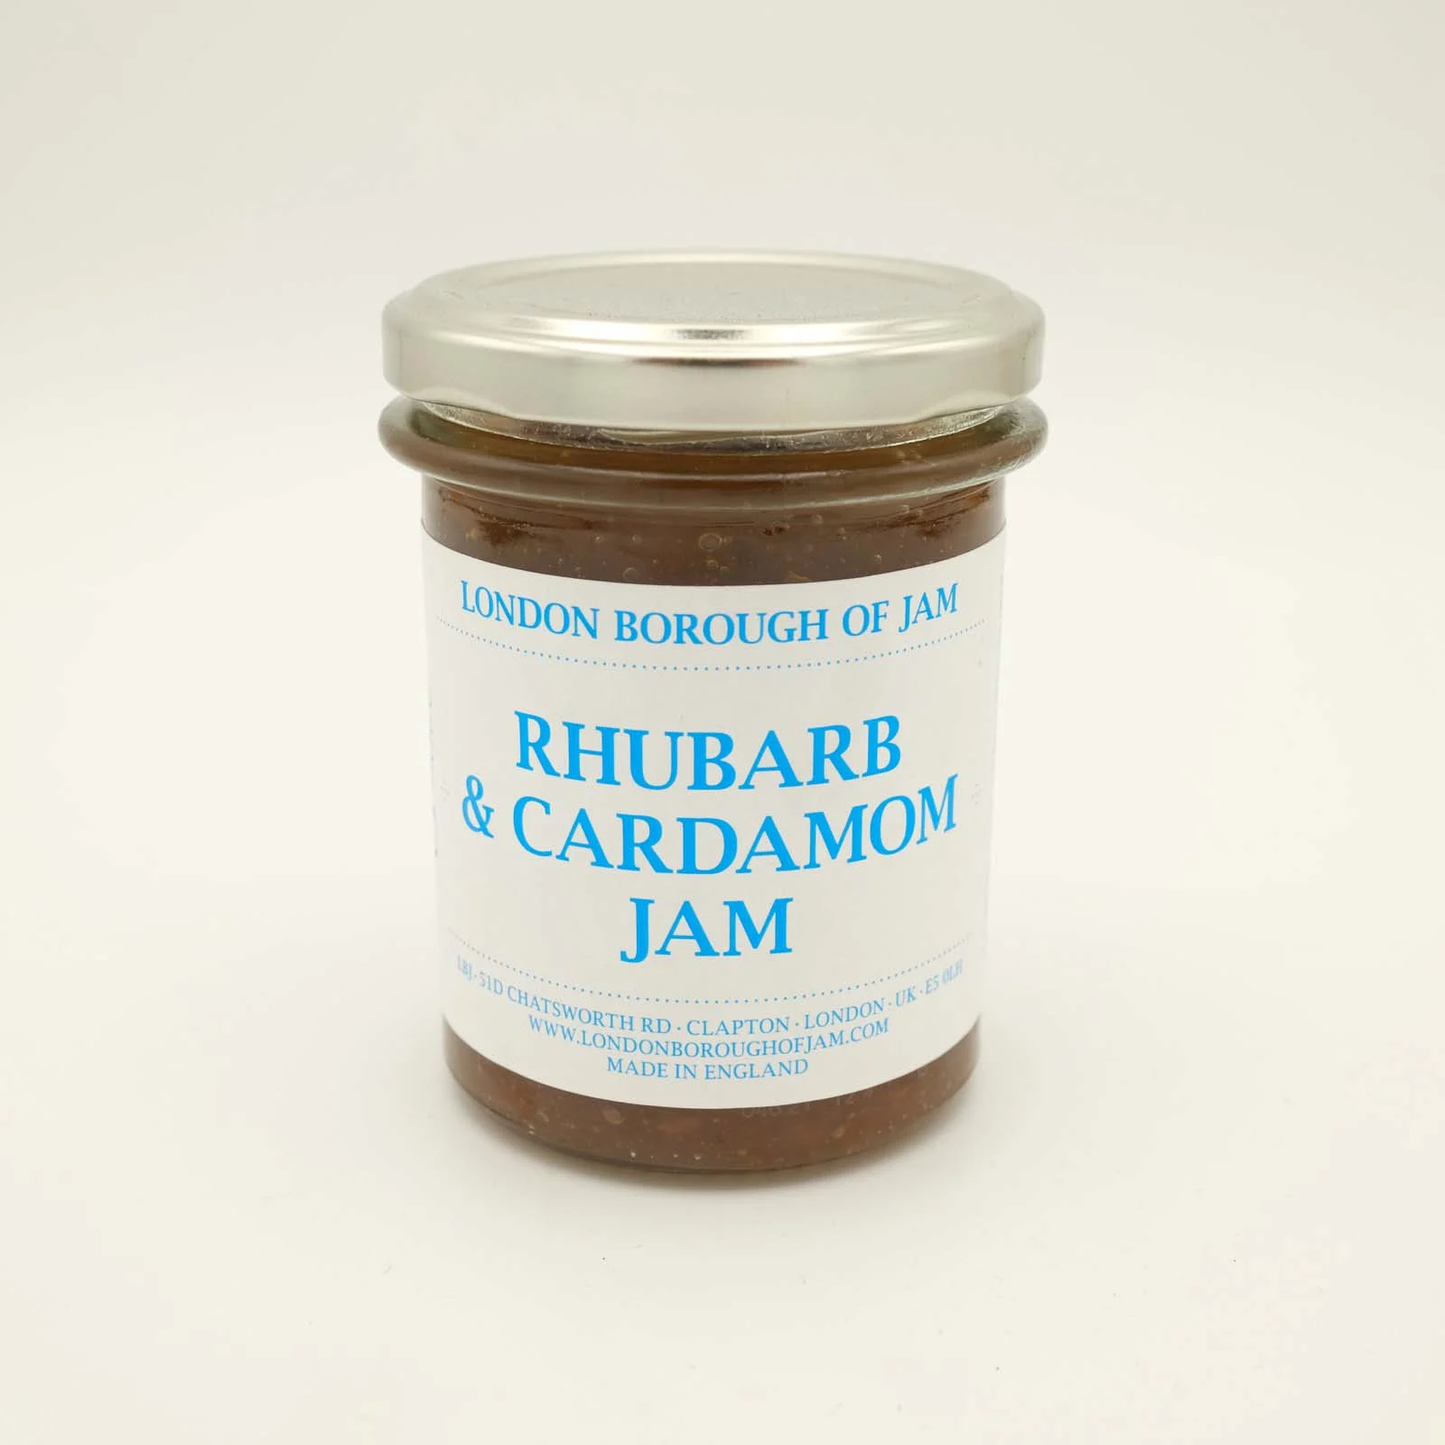 London Borough of Jam Rhubarb & Cardamon